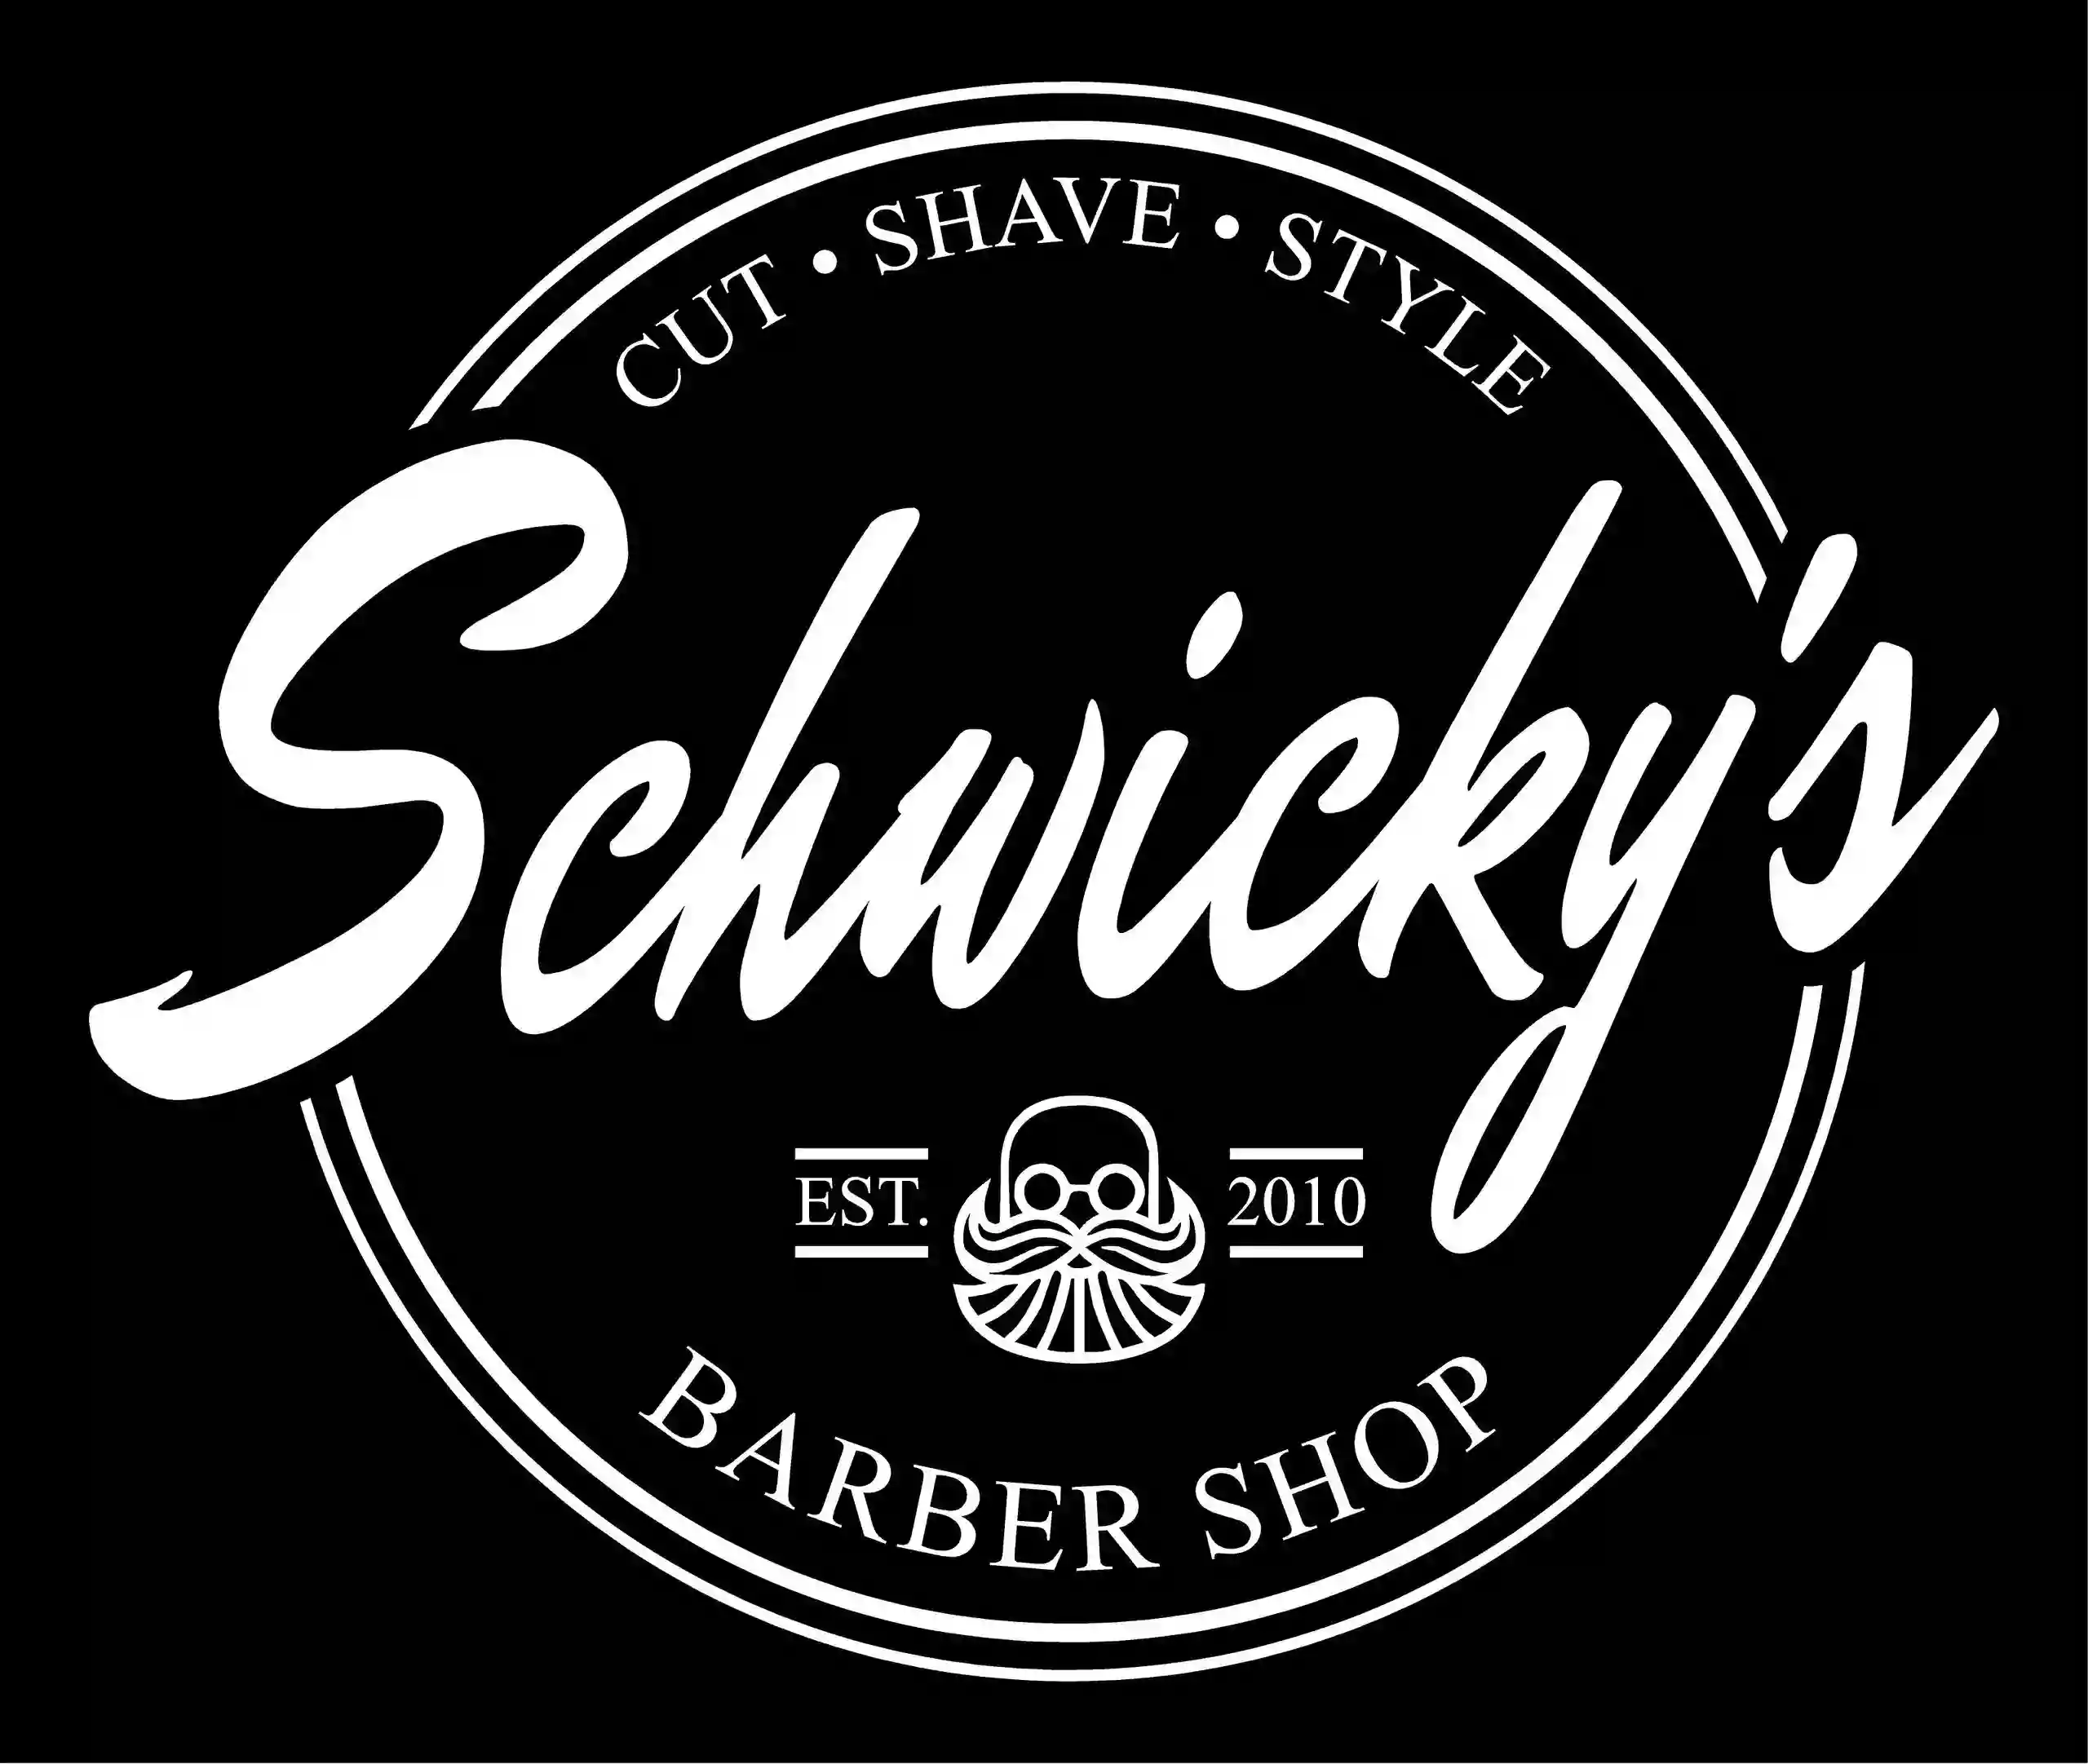 Schwicky's